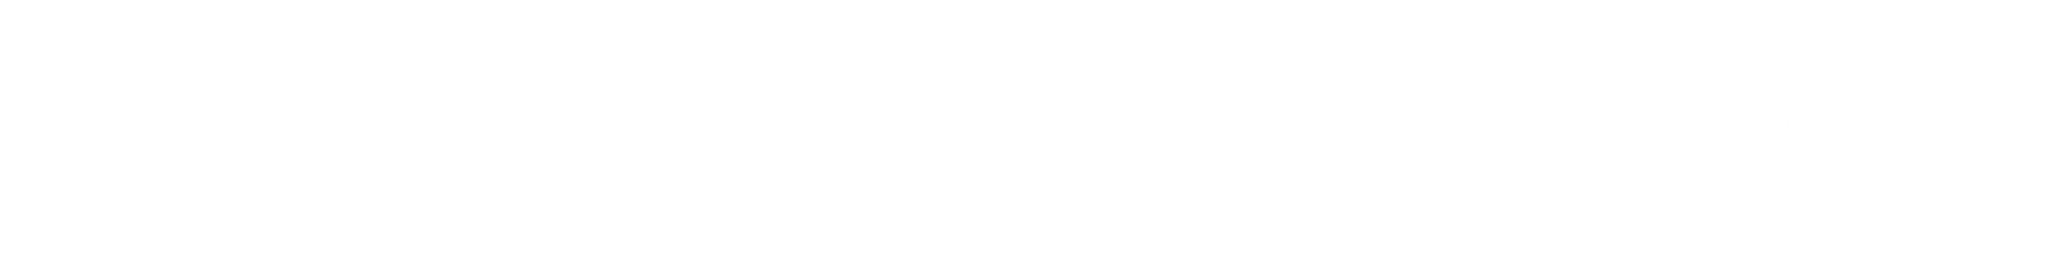 Ford Foundation logo